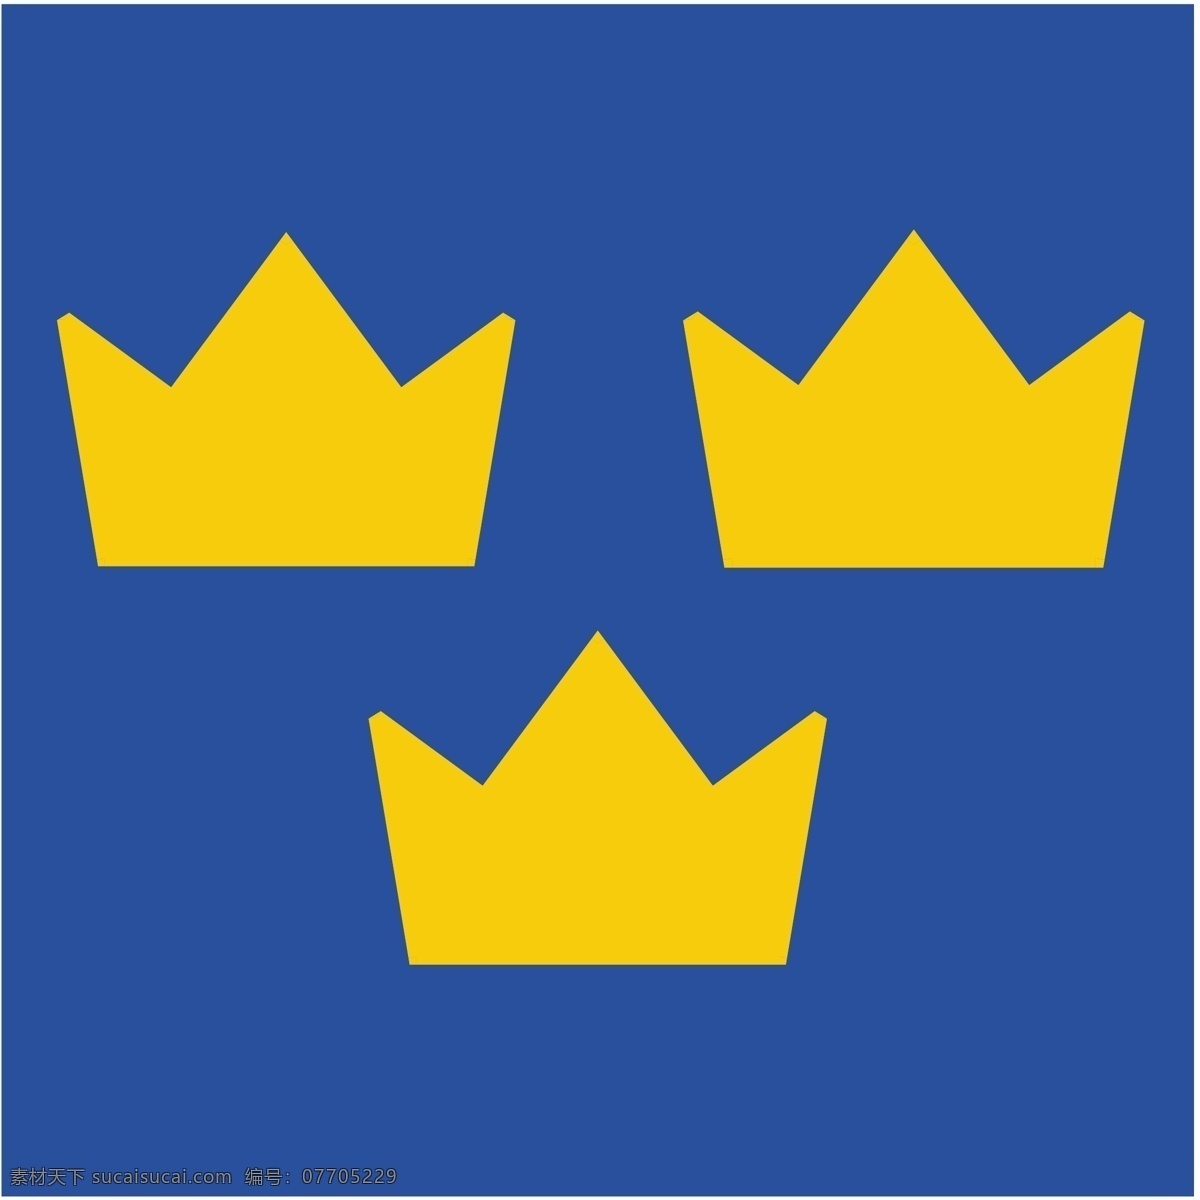 瑞典 曲棍球 瑞典曲棍球 冰球 矢量 免费 图像 矢量曲棍球 自由 向量 向量的下载 图形 矢量艺术艺术 冰球艺术自由 蓝色